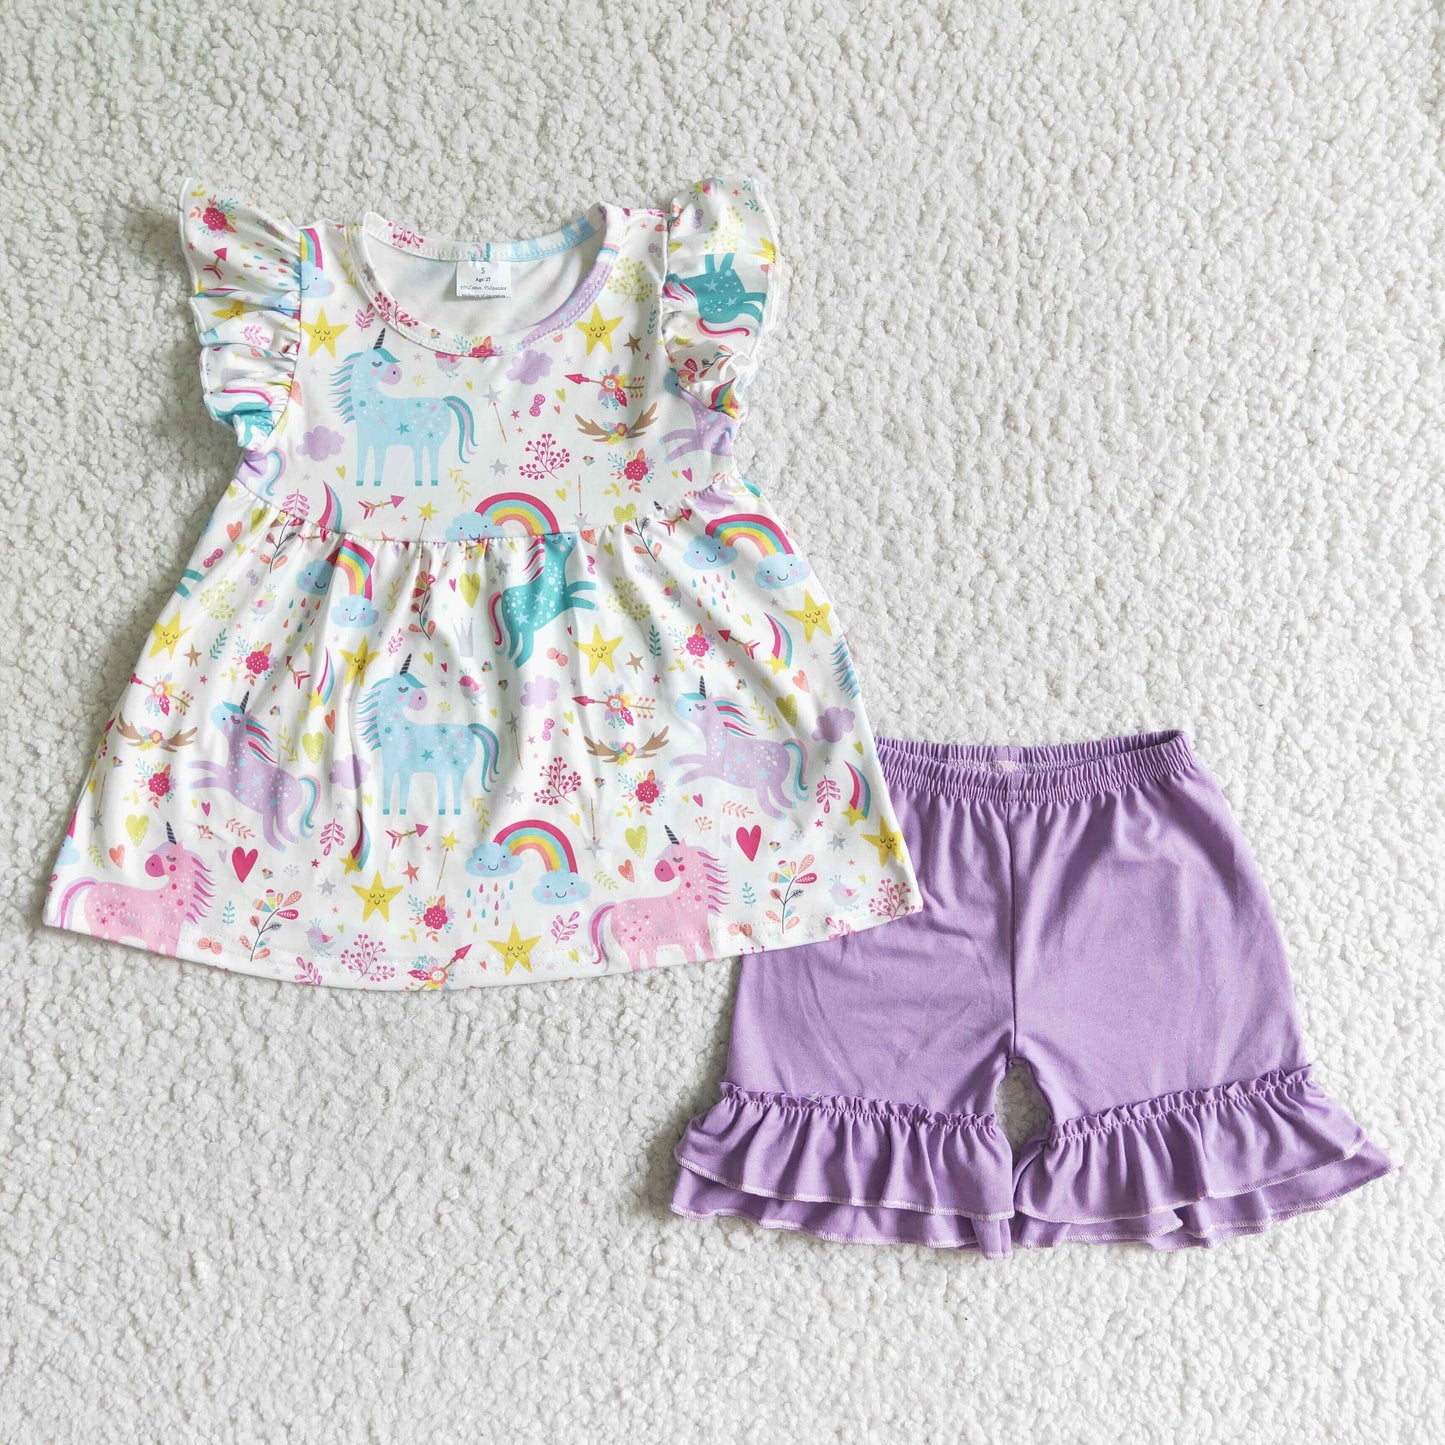 Unicorn flutter sleeve purple shorts kids clothing set